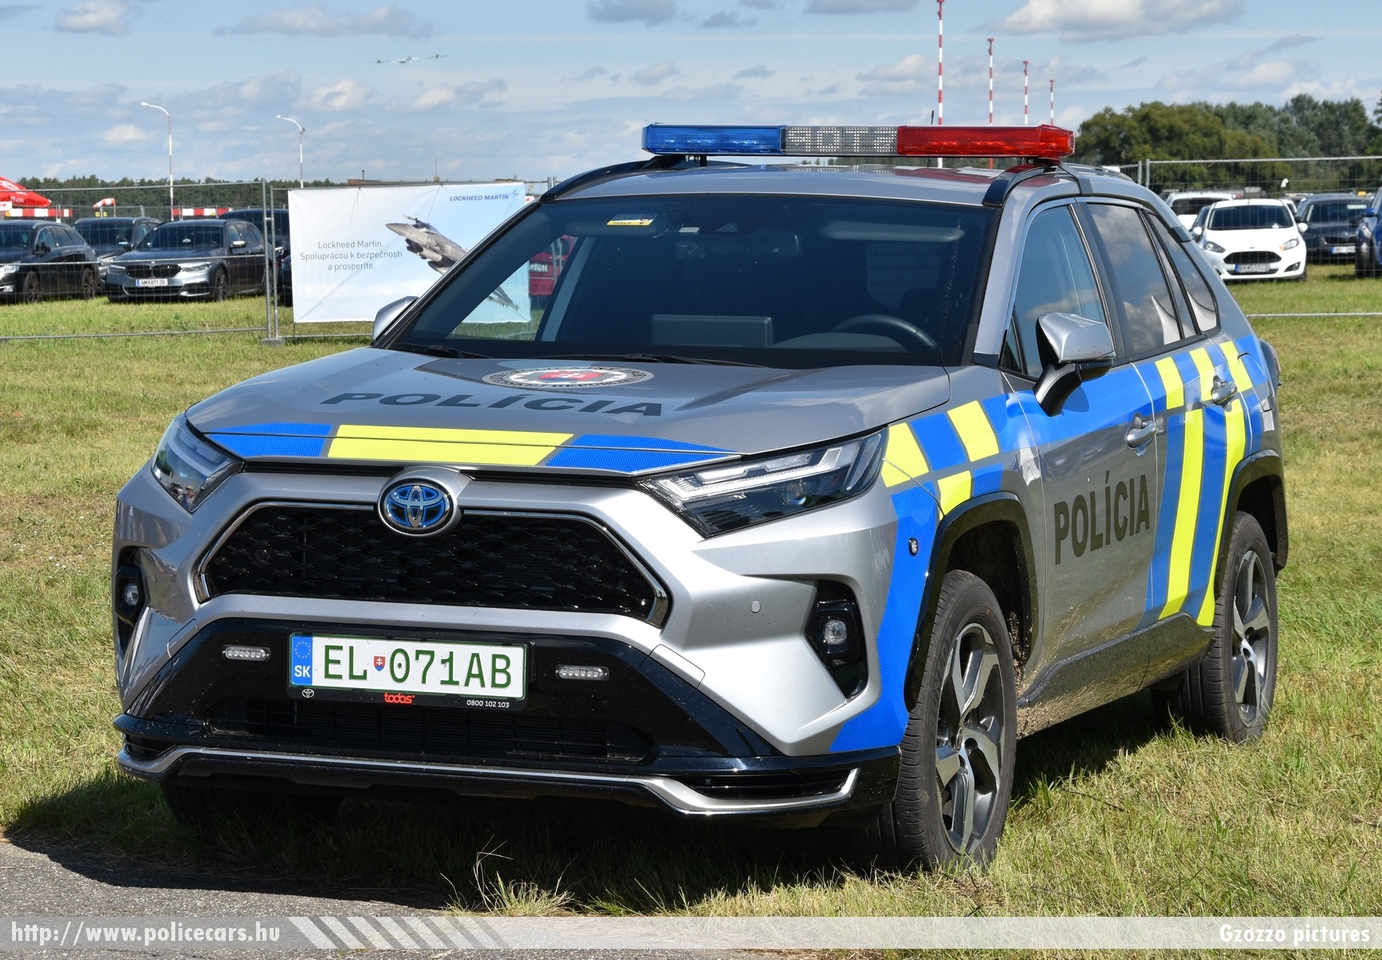 Toyota RAV4 PHEV, Polícia SR, fotó: Gzozzo pictures
Keywords: szlovák Szlovákia rendőr rendőrautó rendőrség police policecar Slovakia slovakian